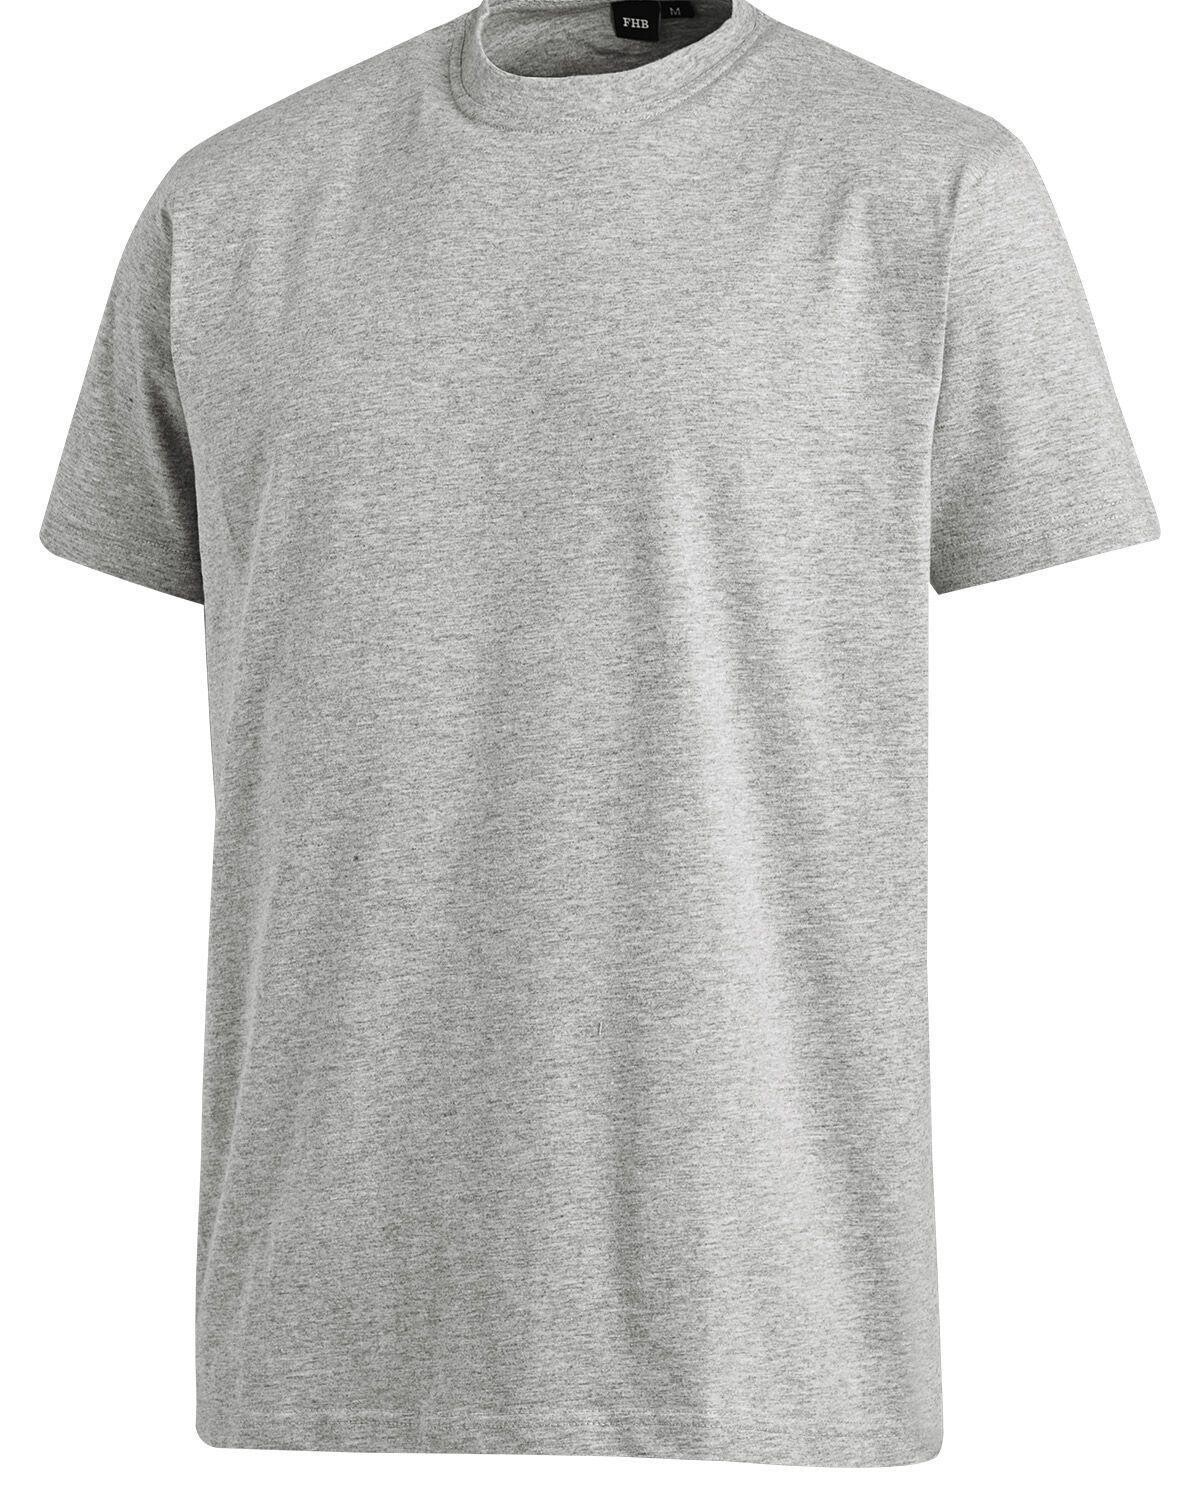 #2 - FHB T-Shirt - Jens (Grå, 3XL)